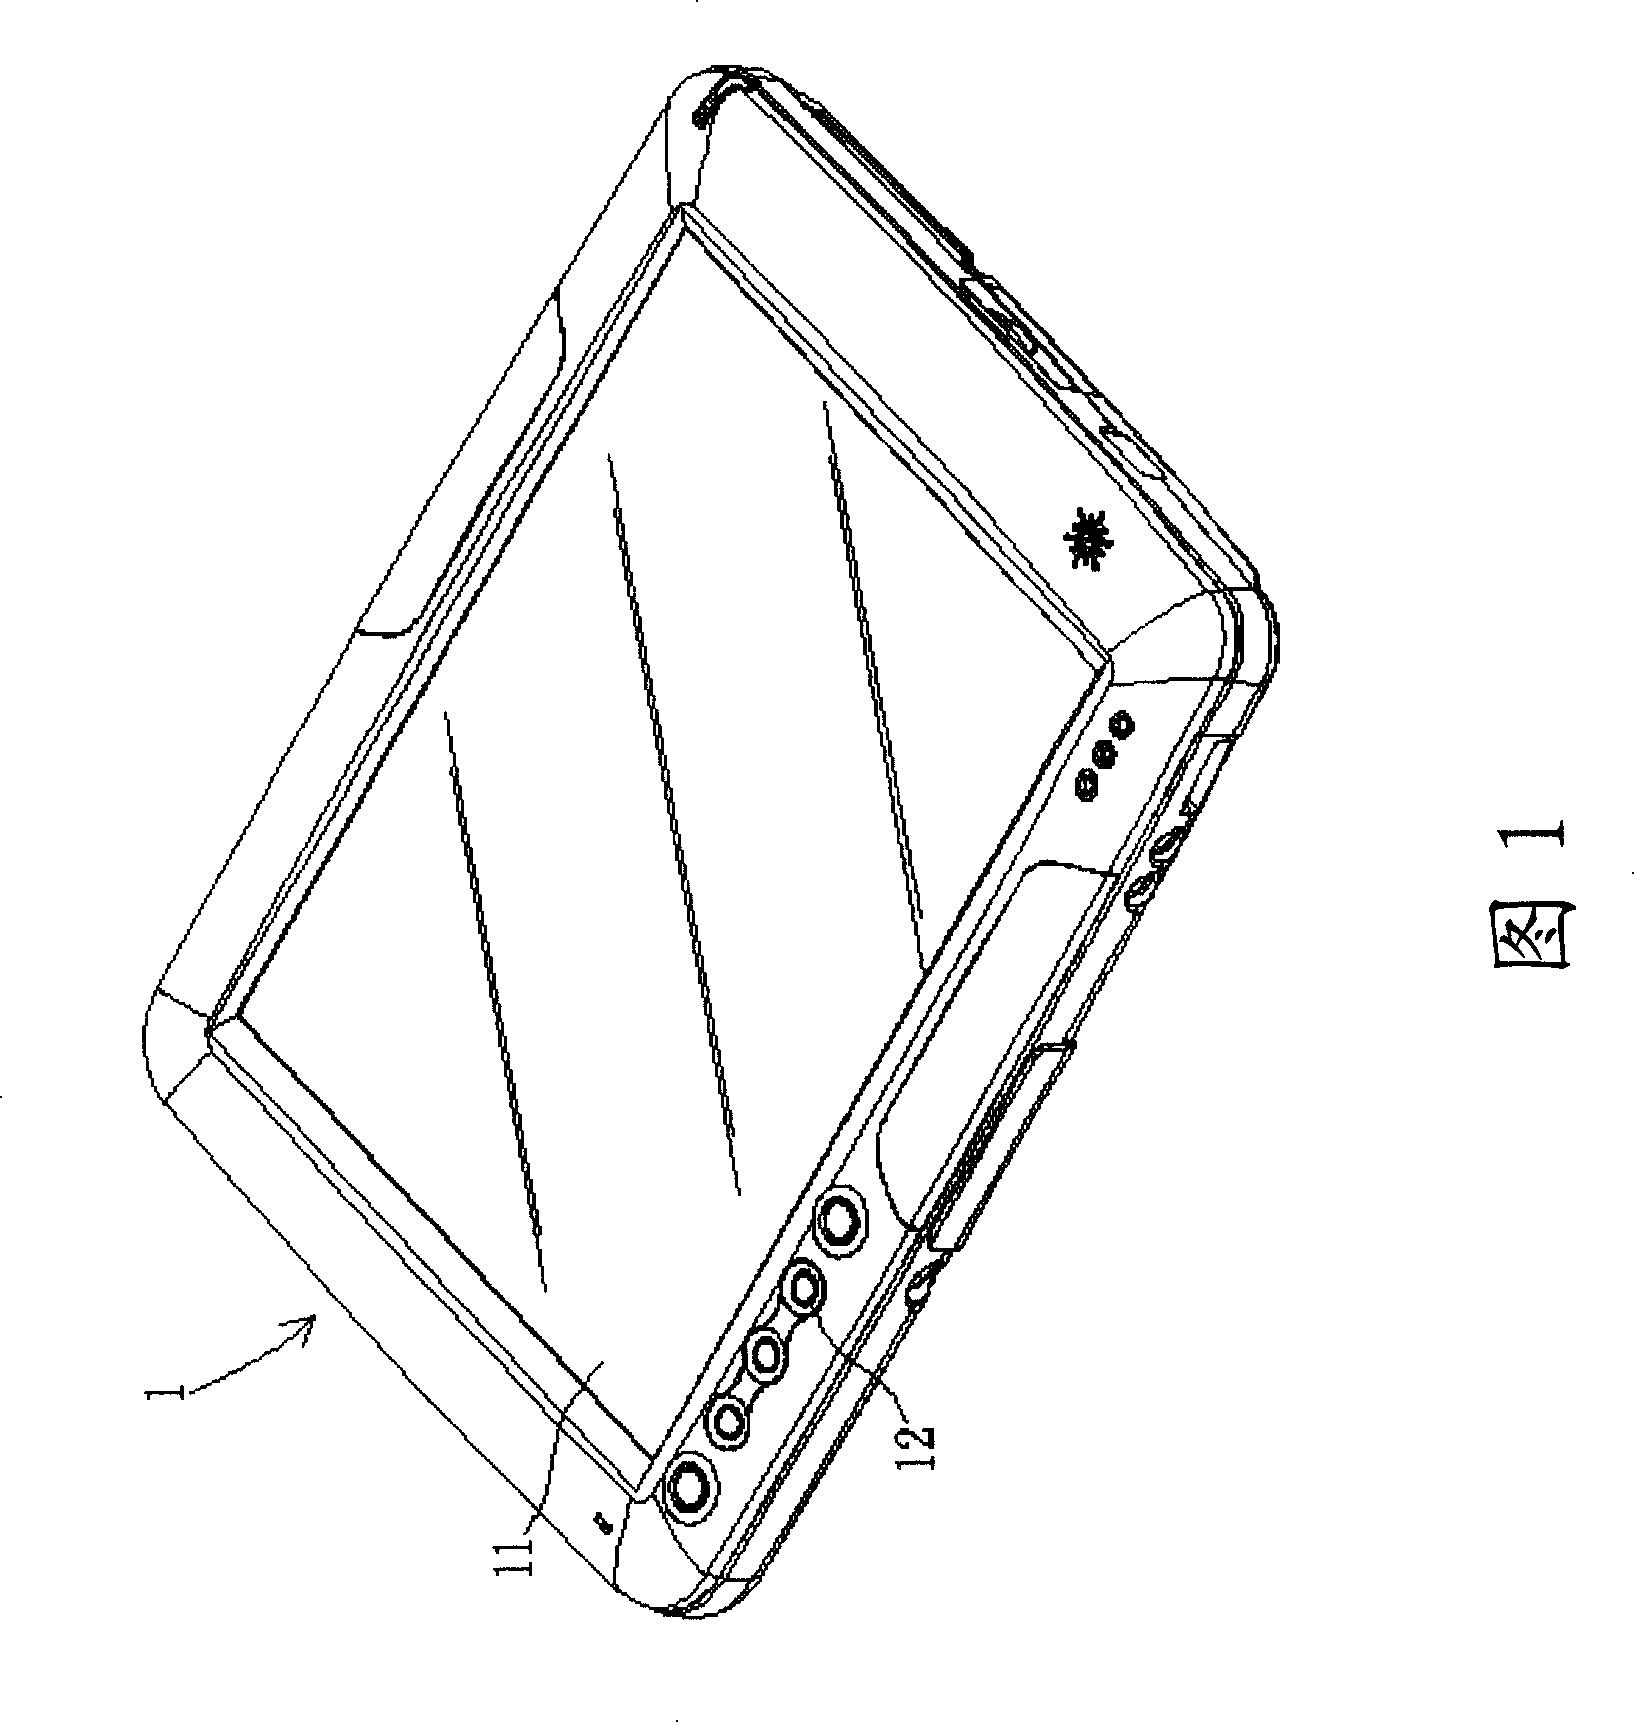 Portable terminal device